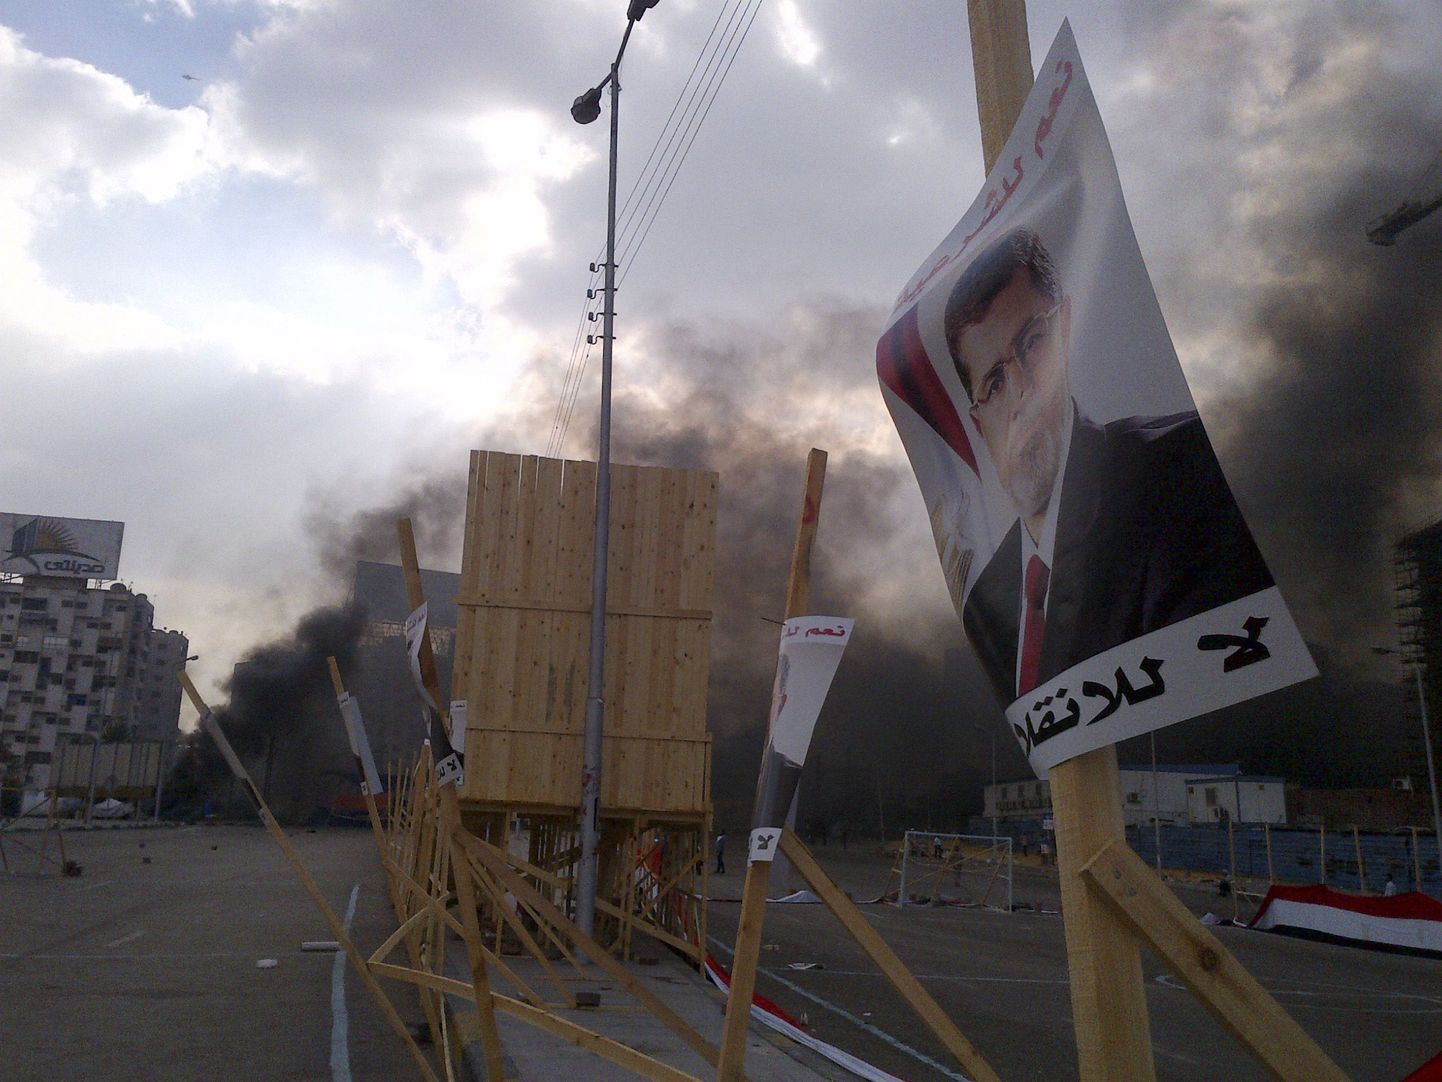 Mohamed Morsi pildiga plakati taustal paistab suits, mis tõuseb Rabba el Adwia väljakult, kus toimuvad vihased kokkupõrked valitsusvägede ja kukutatud presidendi toetajate vahel.